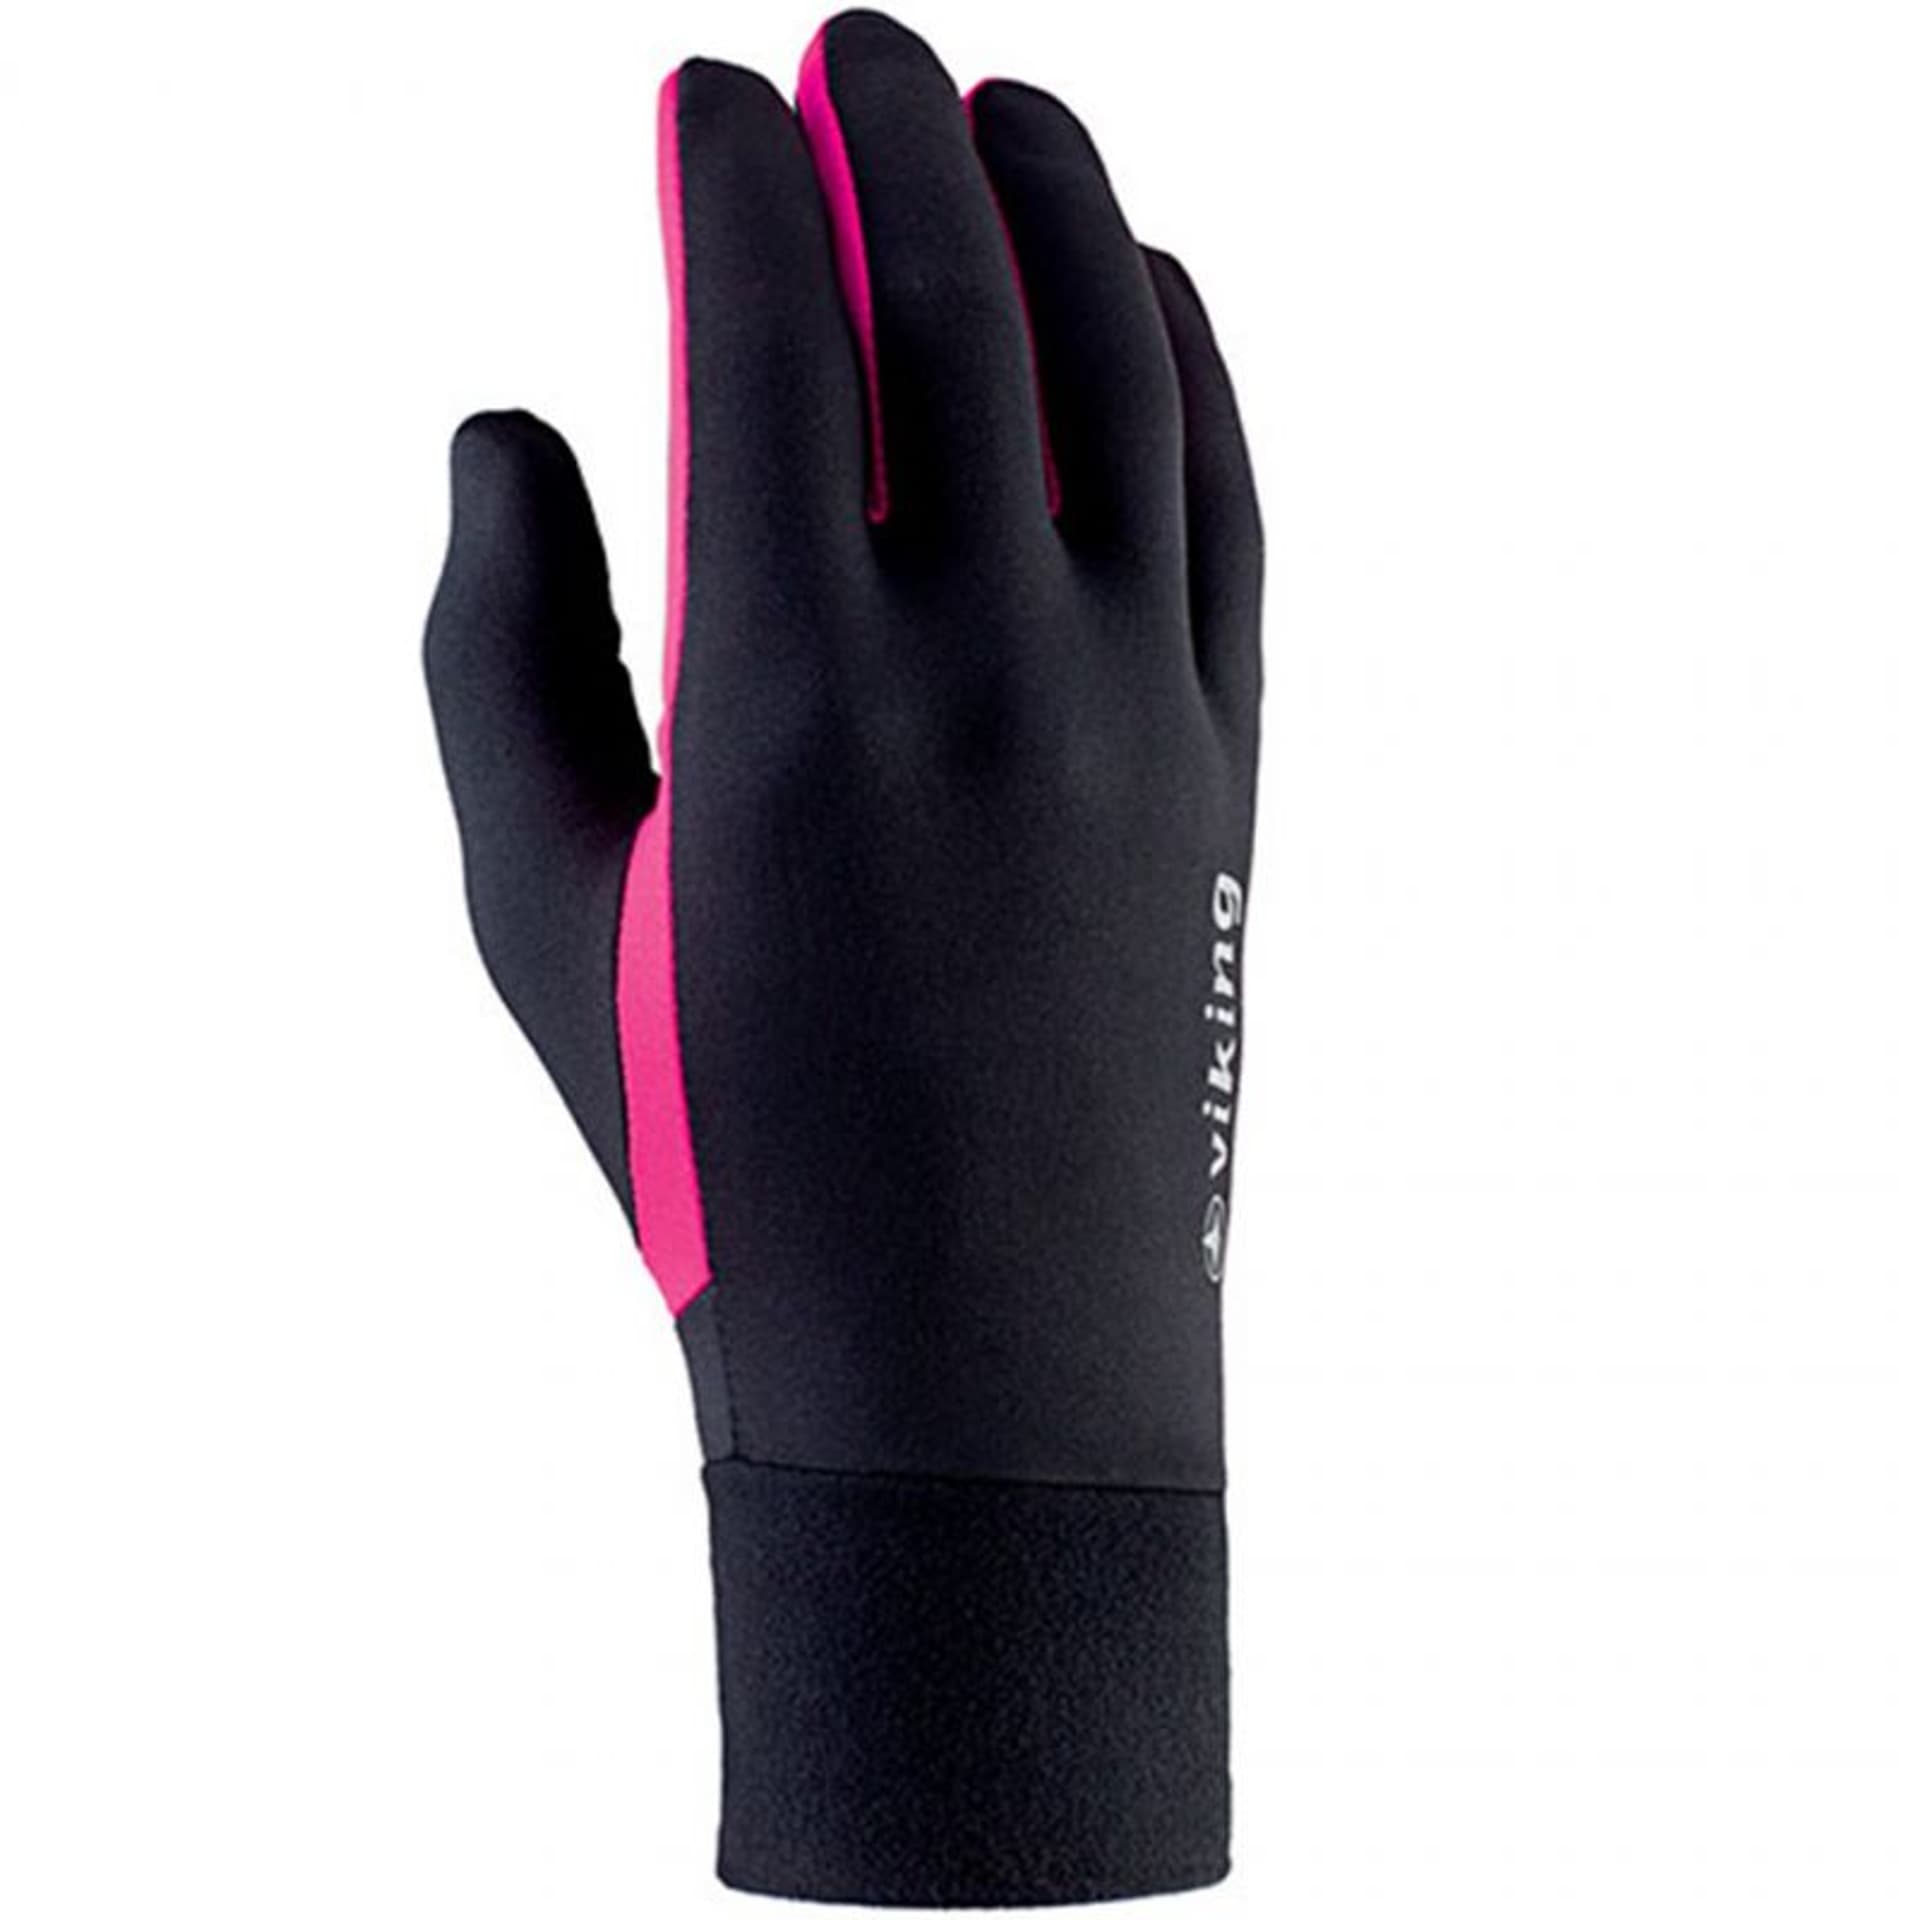 Rękawiczki do biegania Viking Runway Multifunction (kolor Czarny. Różowy, rozmiar 8)